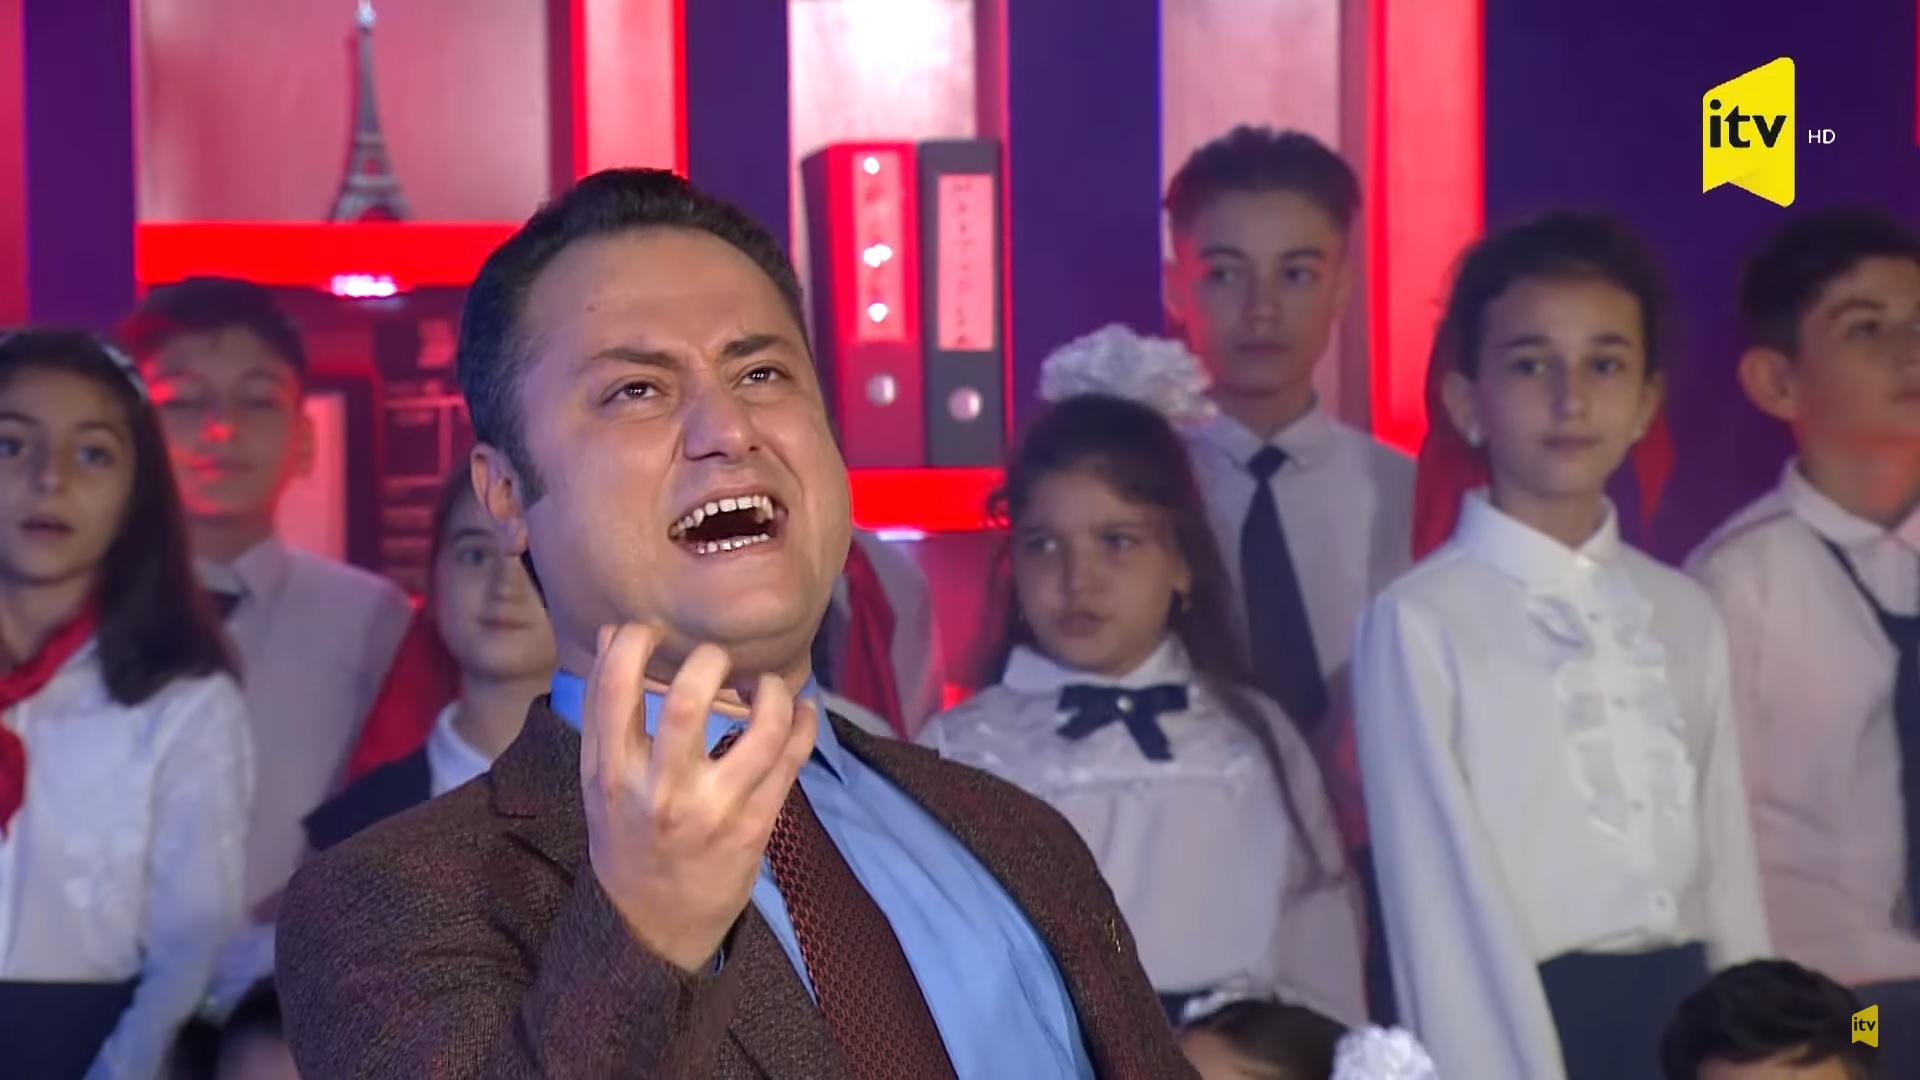 Общественное телевидение Азербайджана использовало детских хор, чтобы оскорбить Макрона